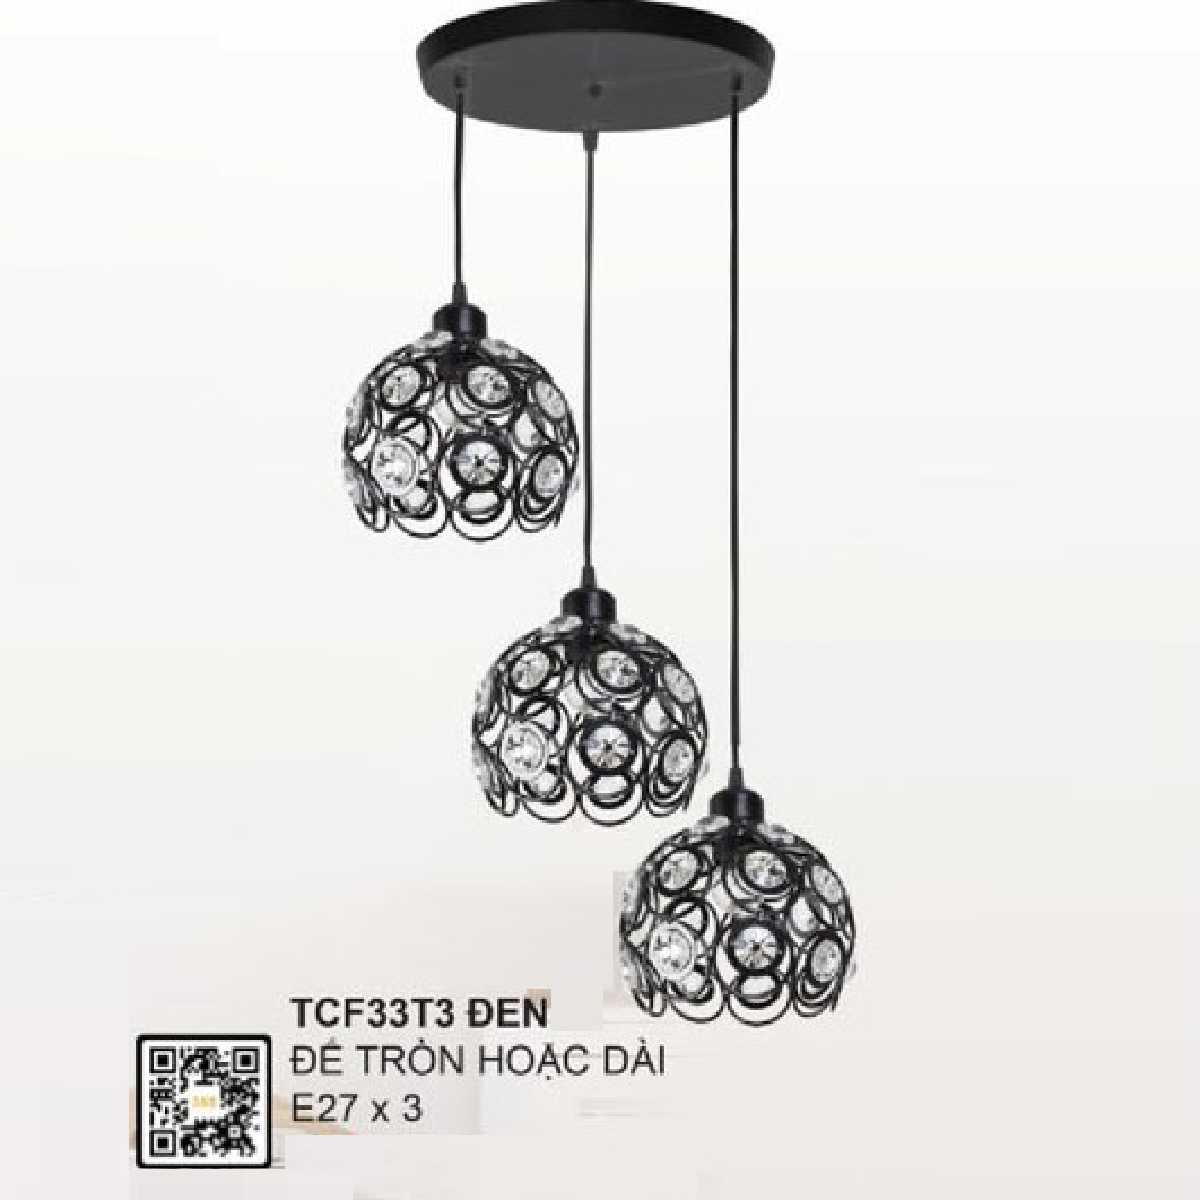 35 - TCF33T3 Đen: Bộ đèn thả 3 bóng, chao đính hạt thủy tinh - Sử dụng đế tròn hoặc dài - Đèn E27 x 3 bóng